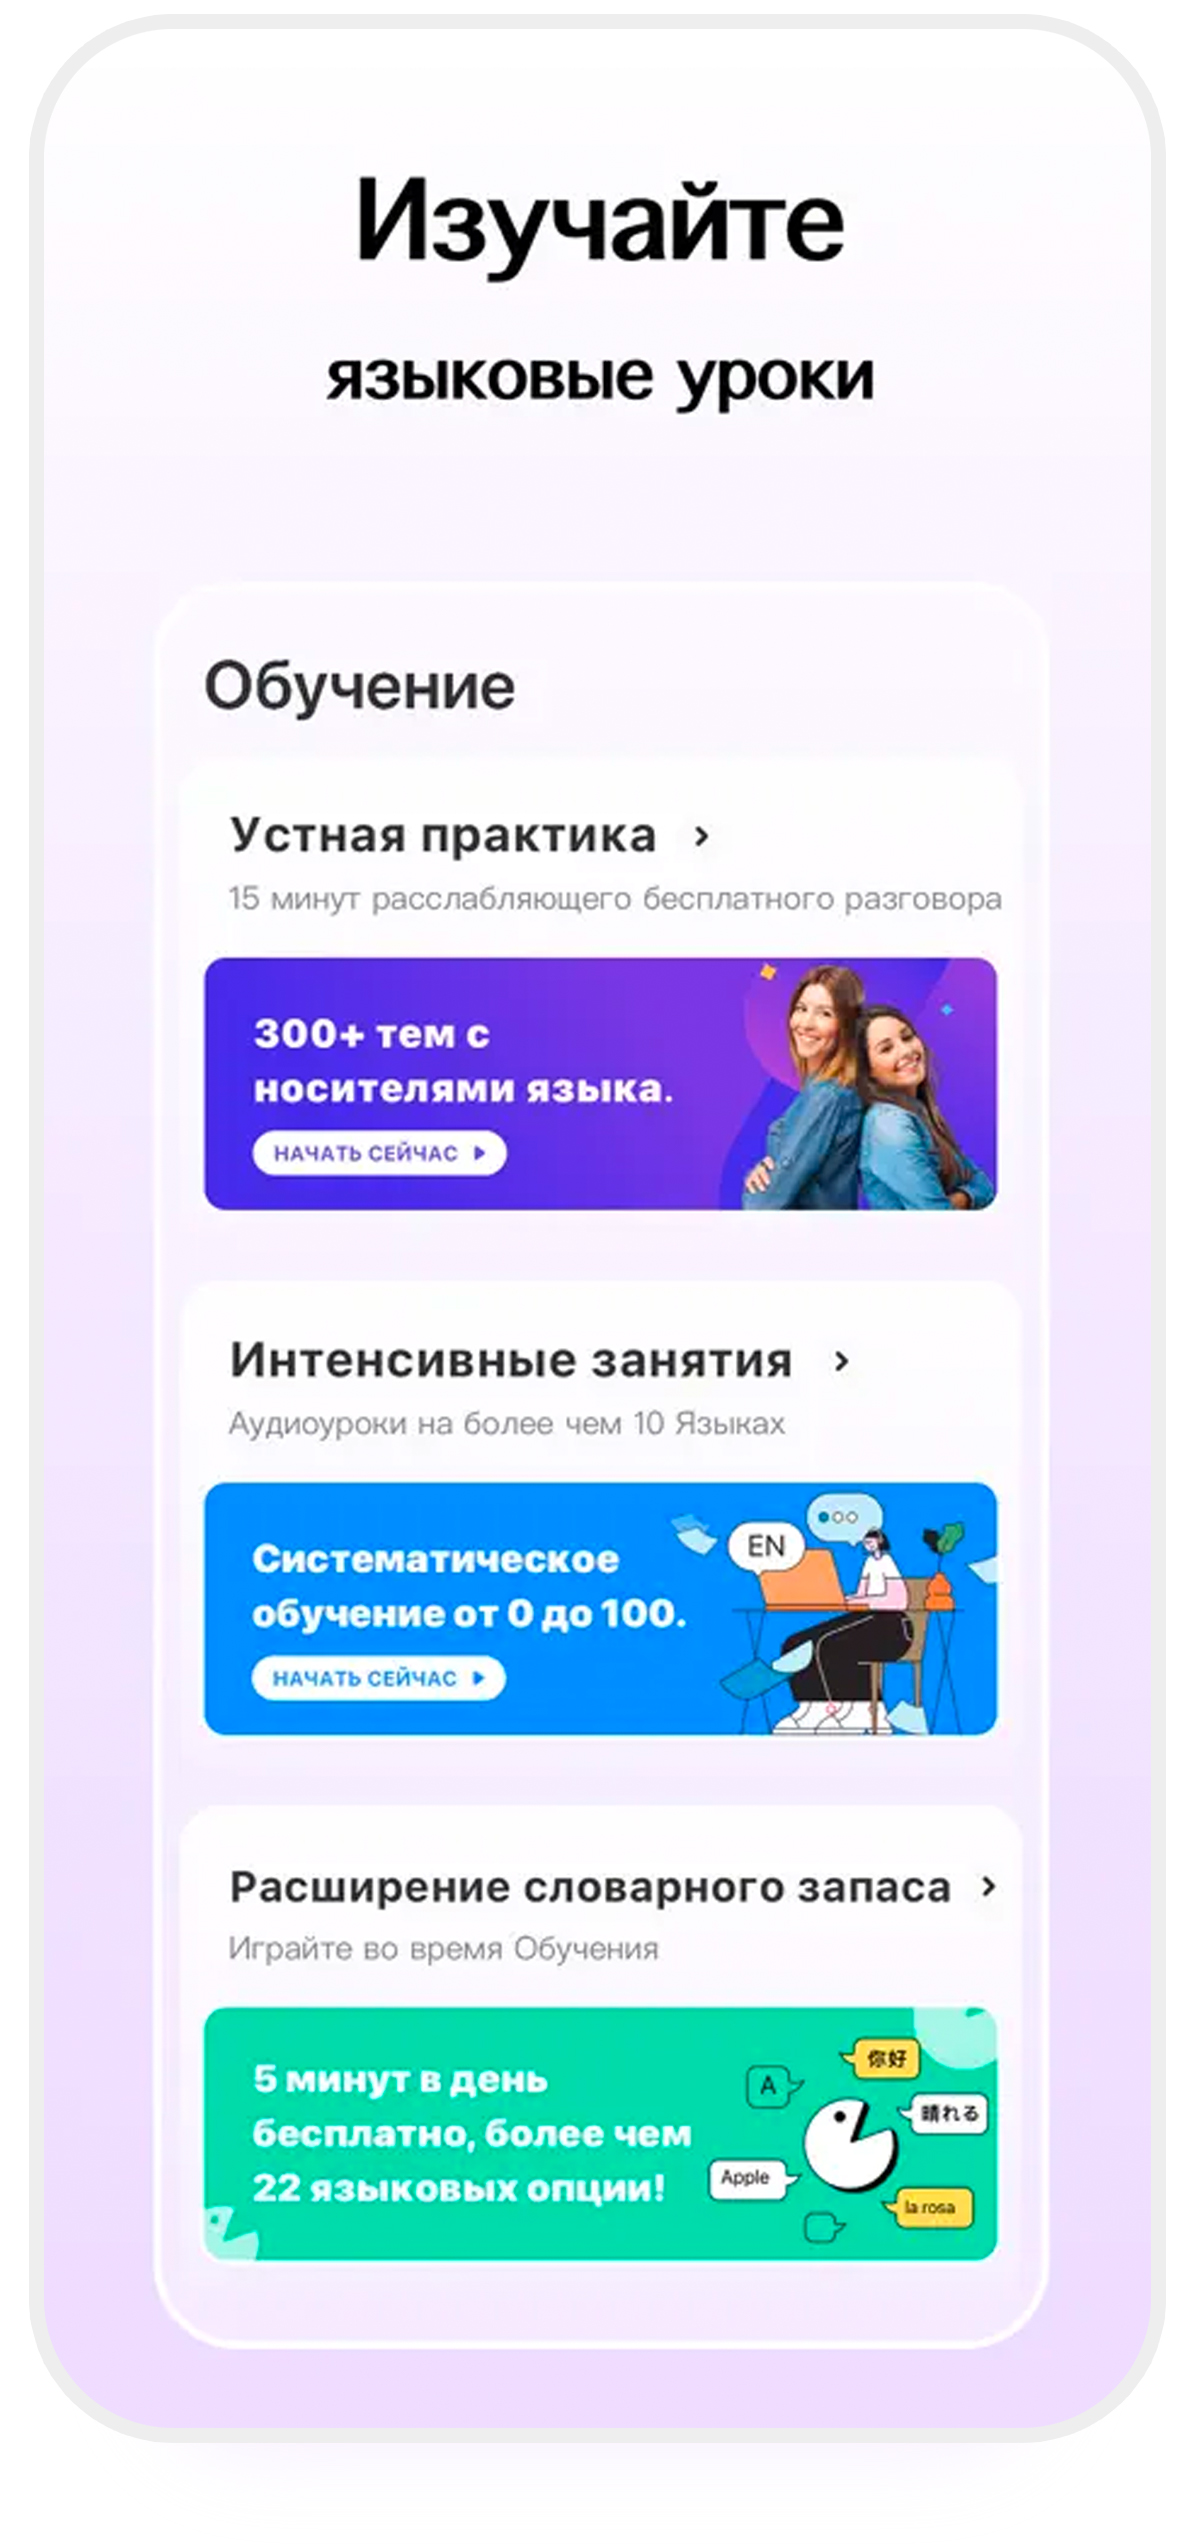 اپلیکیشن HelloTalk بهترین اپلیکیشن آموزش زبان روسی